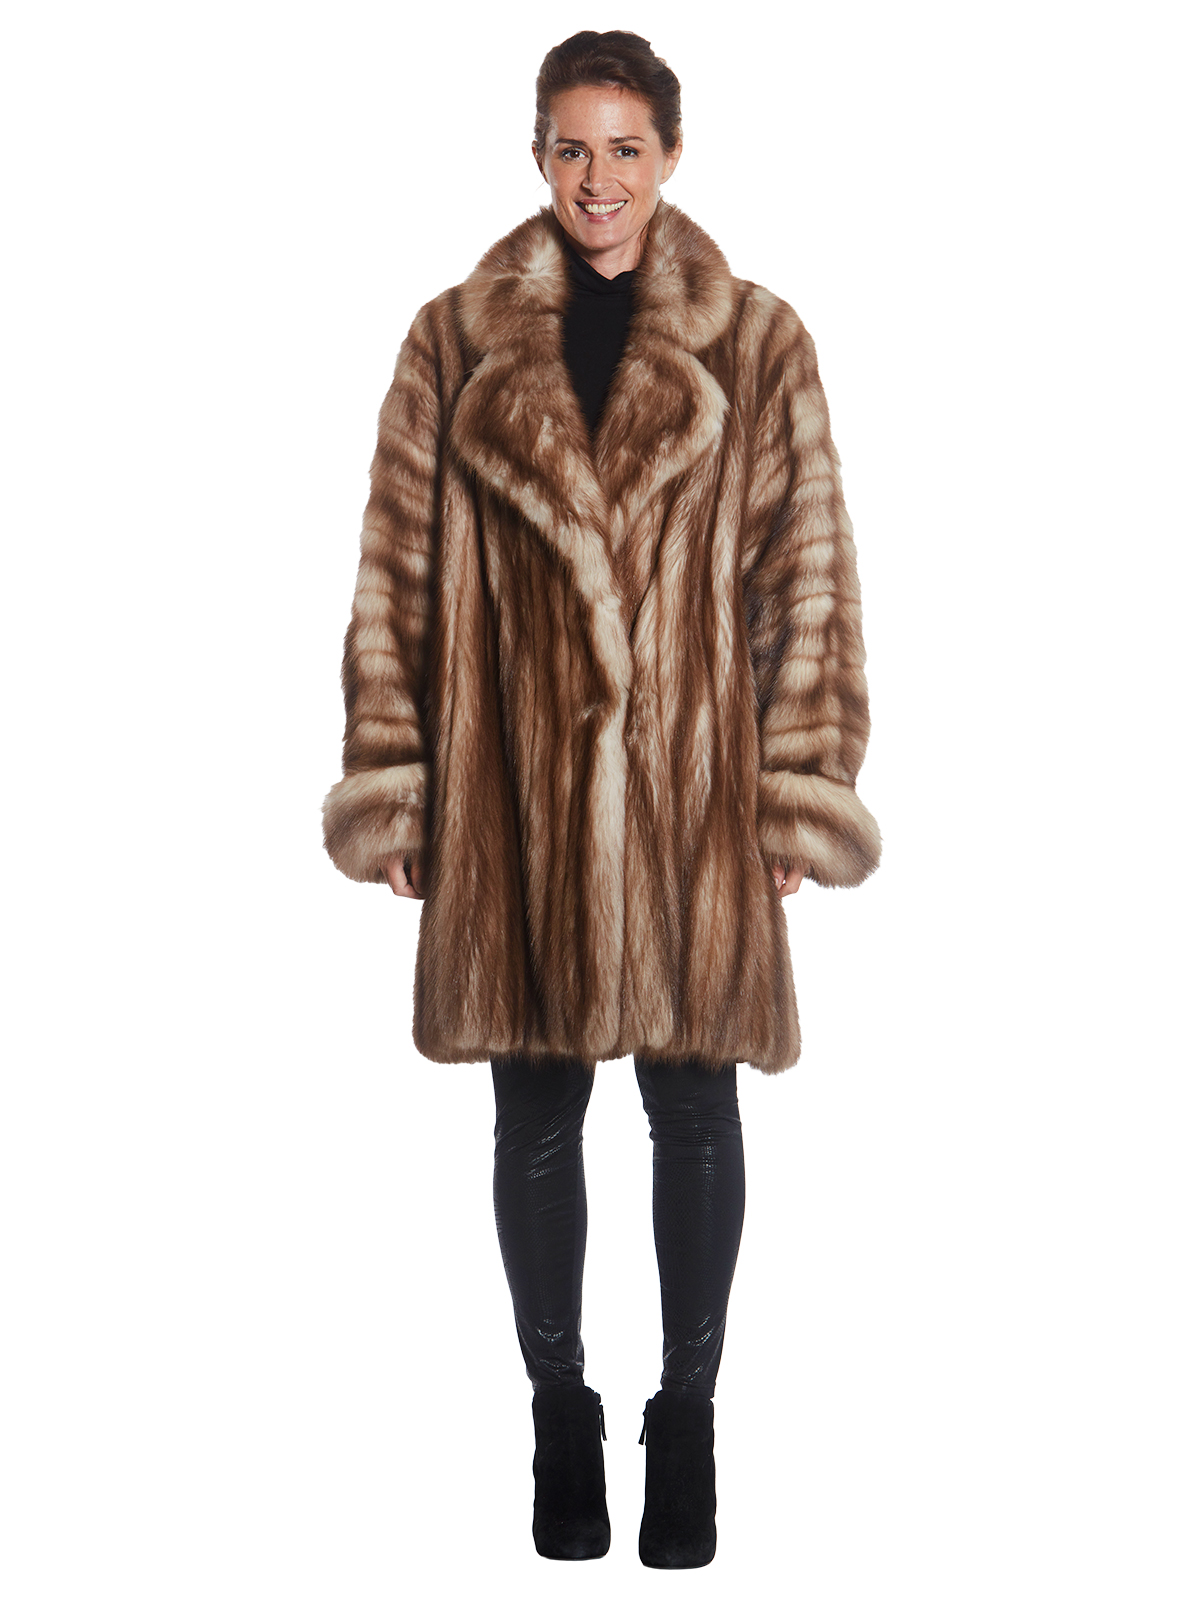 Stone Marten 7/8 Coat- Women's Coat - XXL| Estate Furs